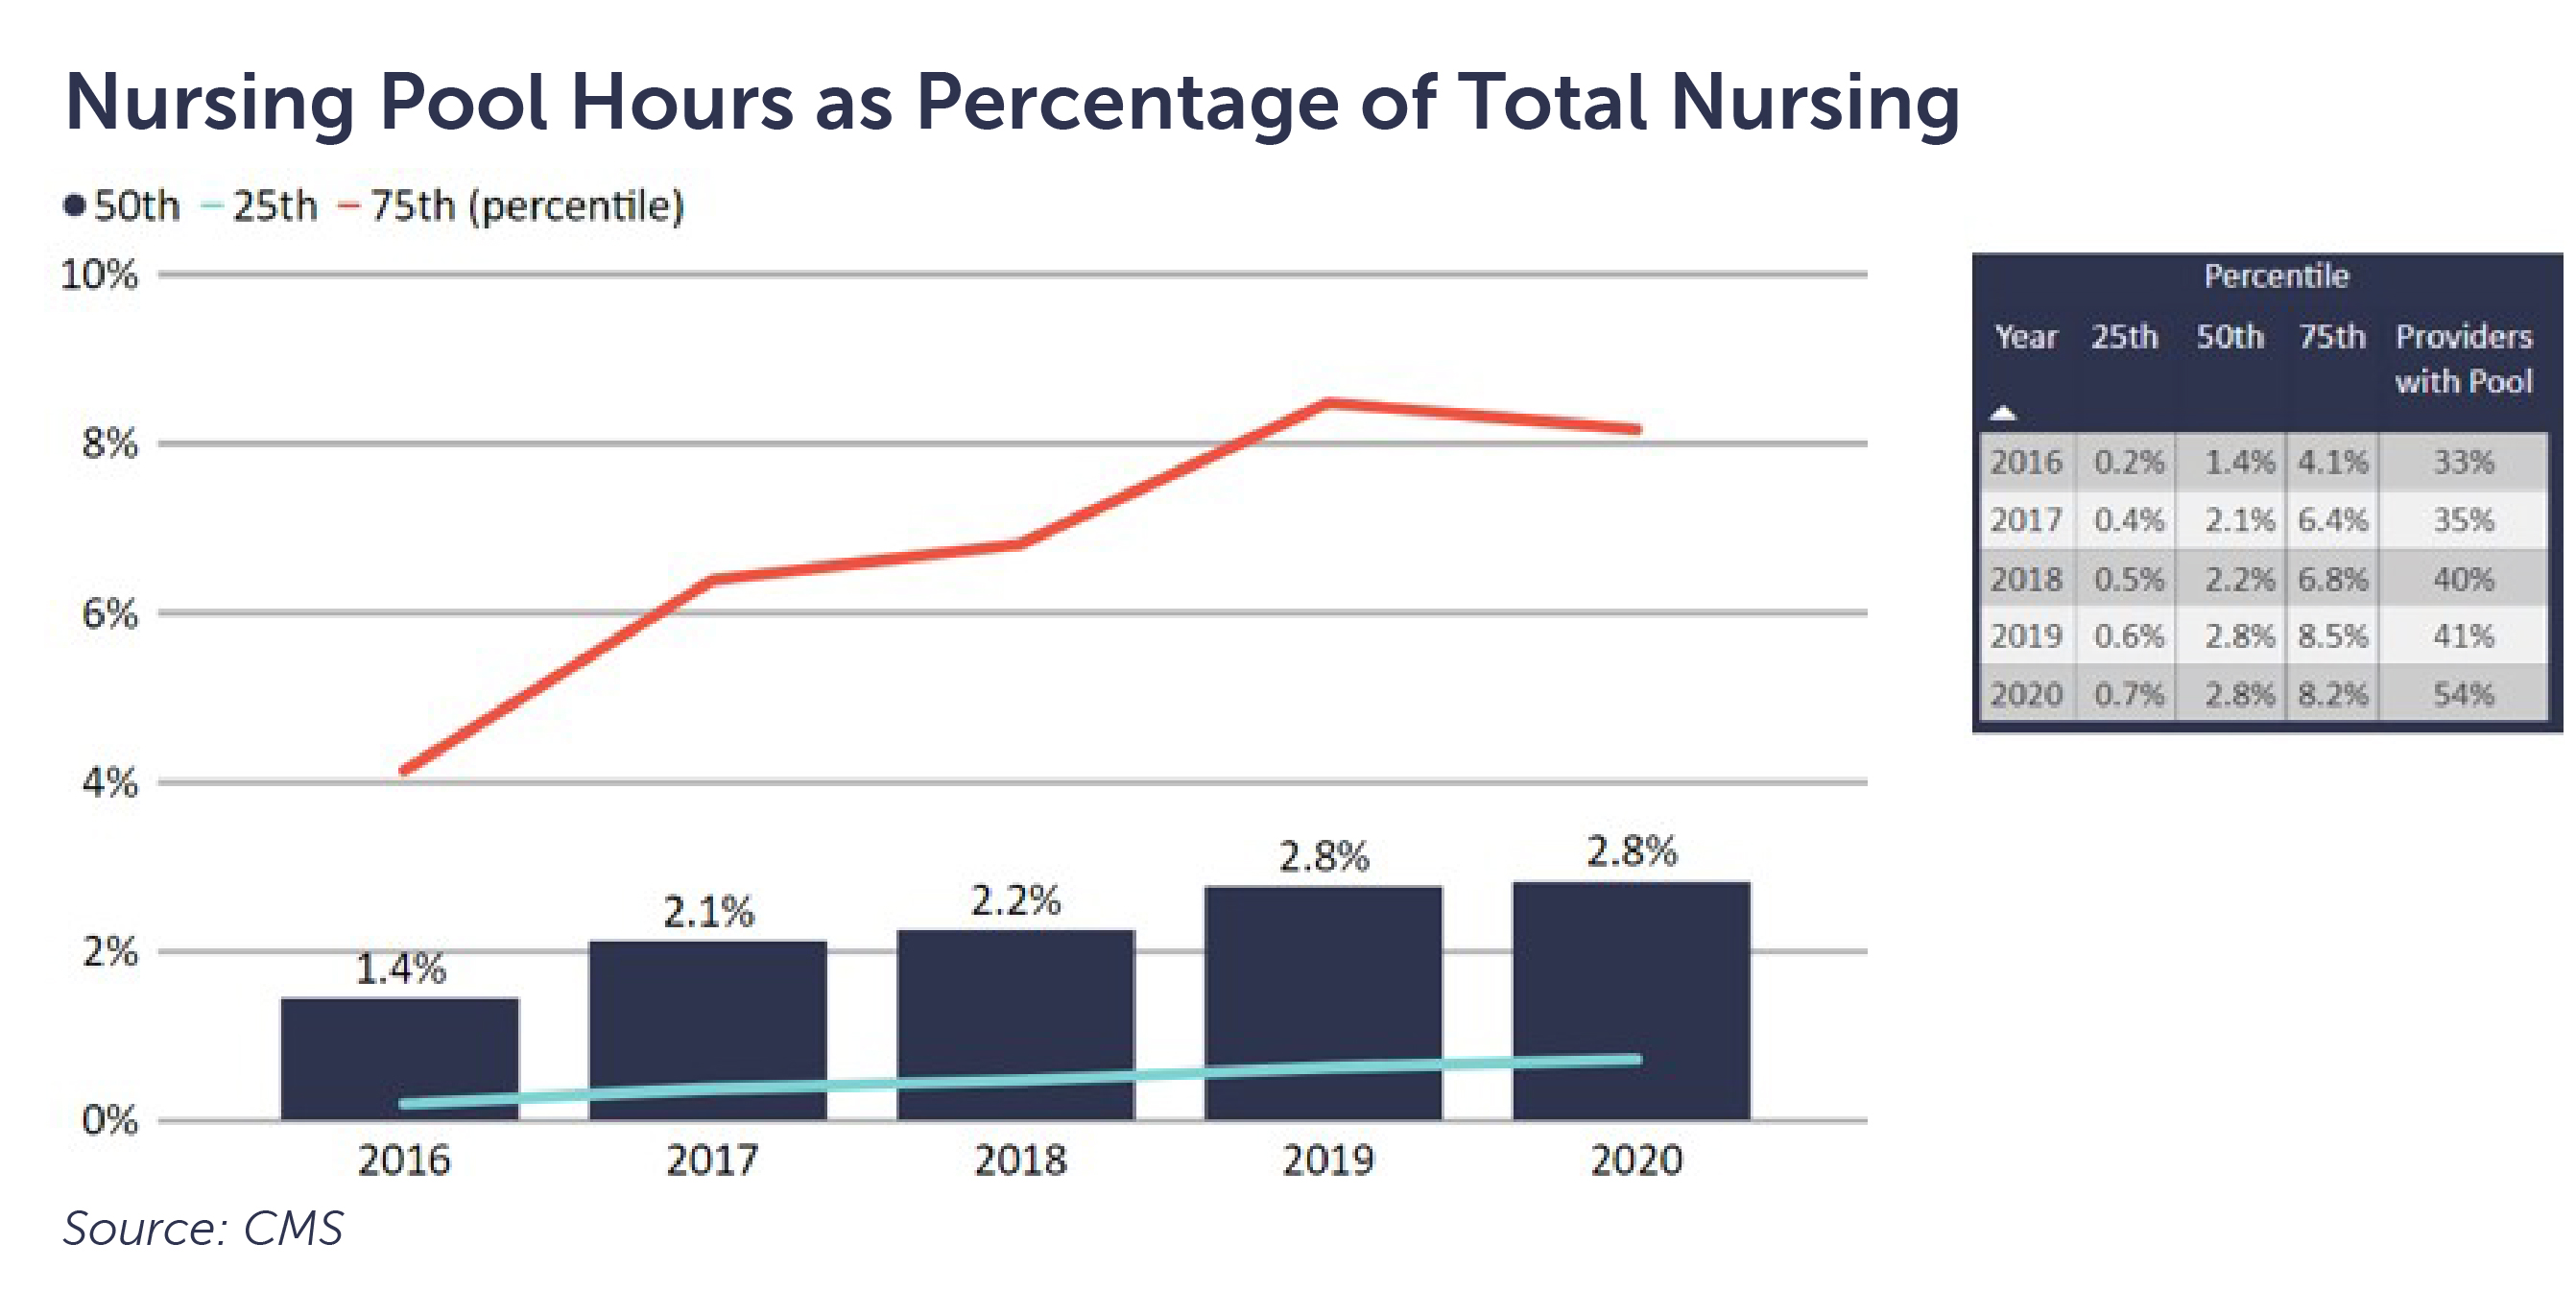 Nursing Pool Hours as Percentage of Total Nursing